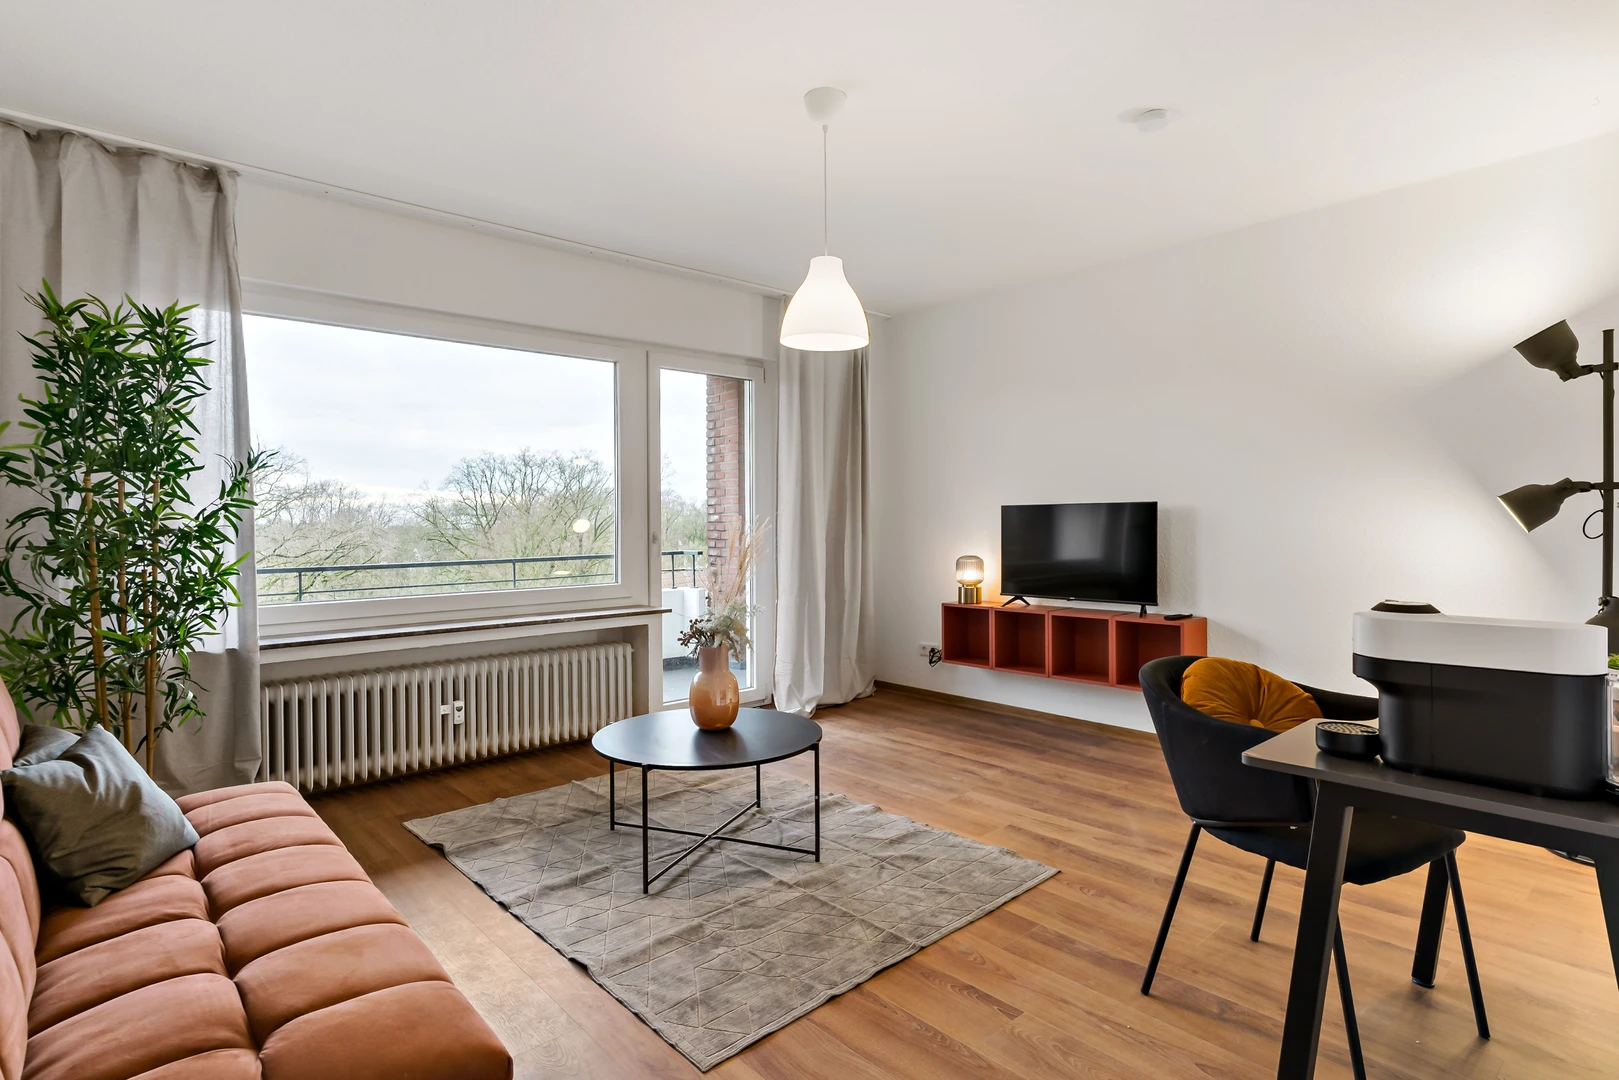 Habitación privada barata en Bielefeld